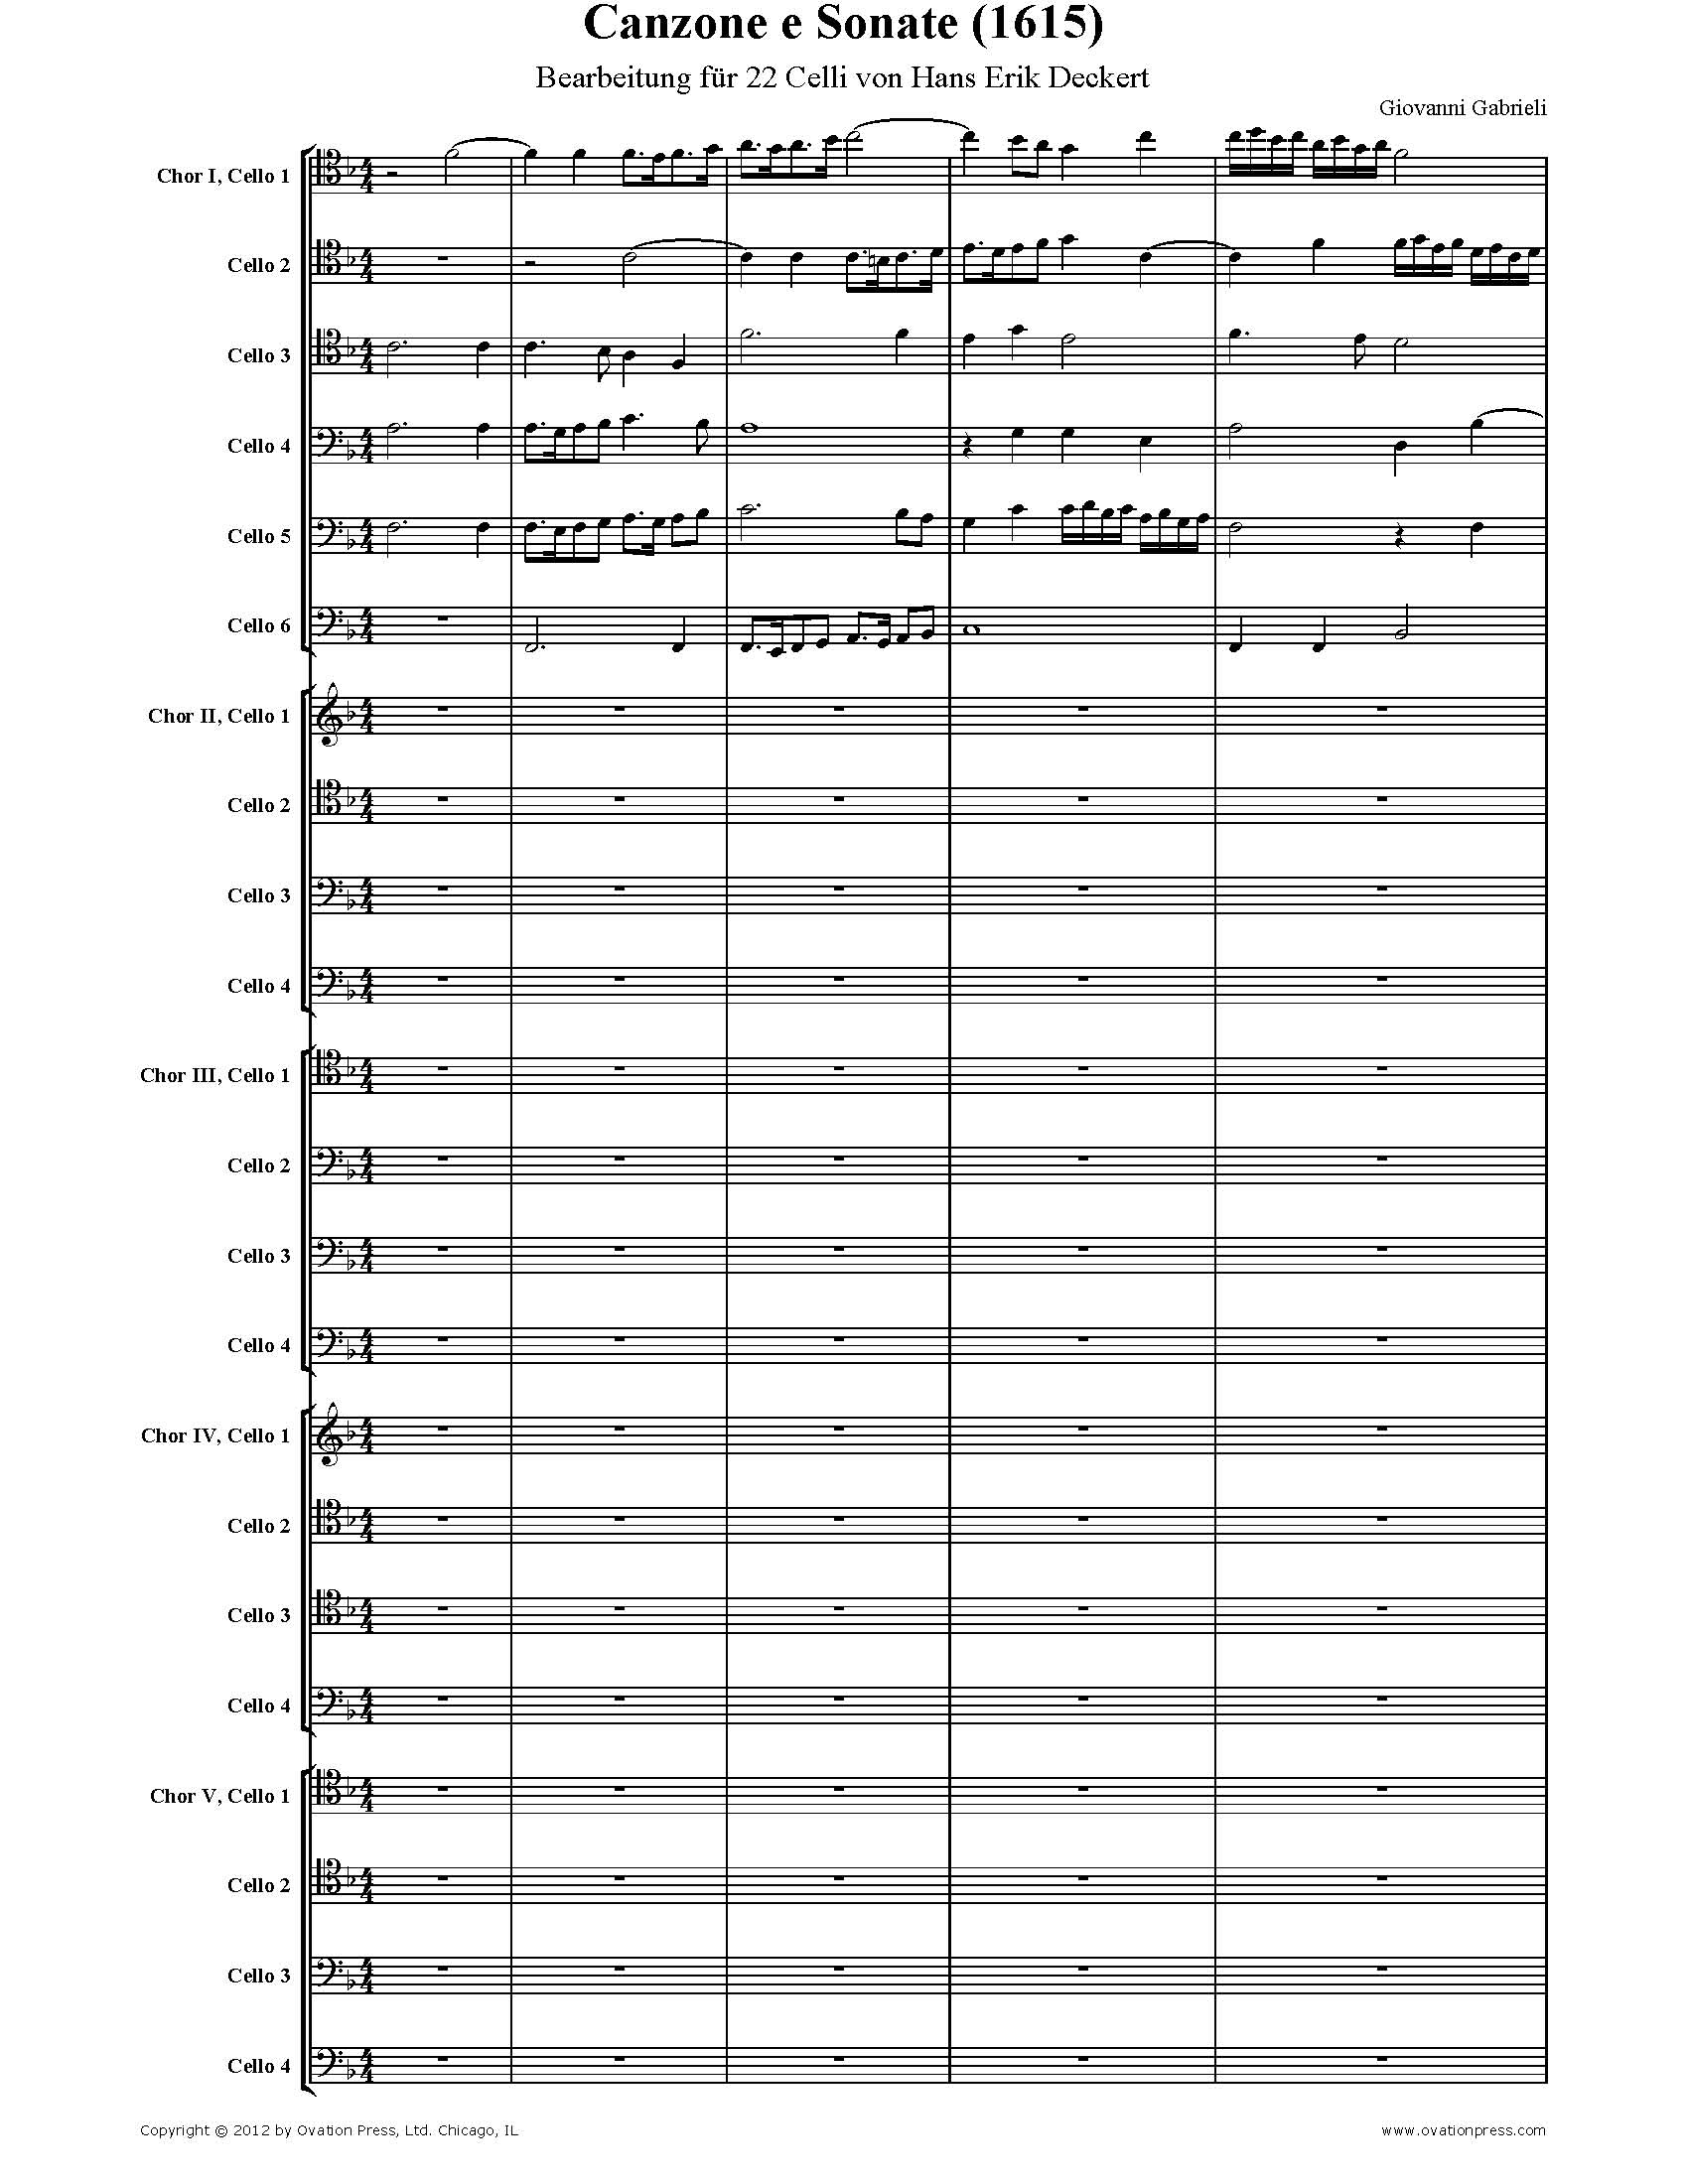 Gabrieli Canzone e Sonate 1615 Arranged for 22 Celli